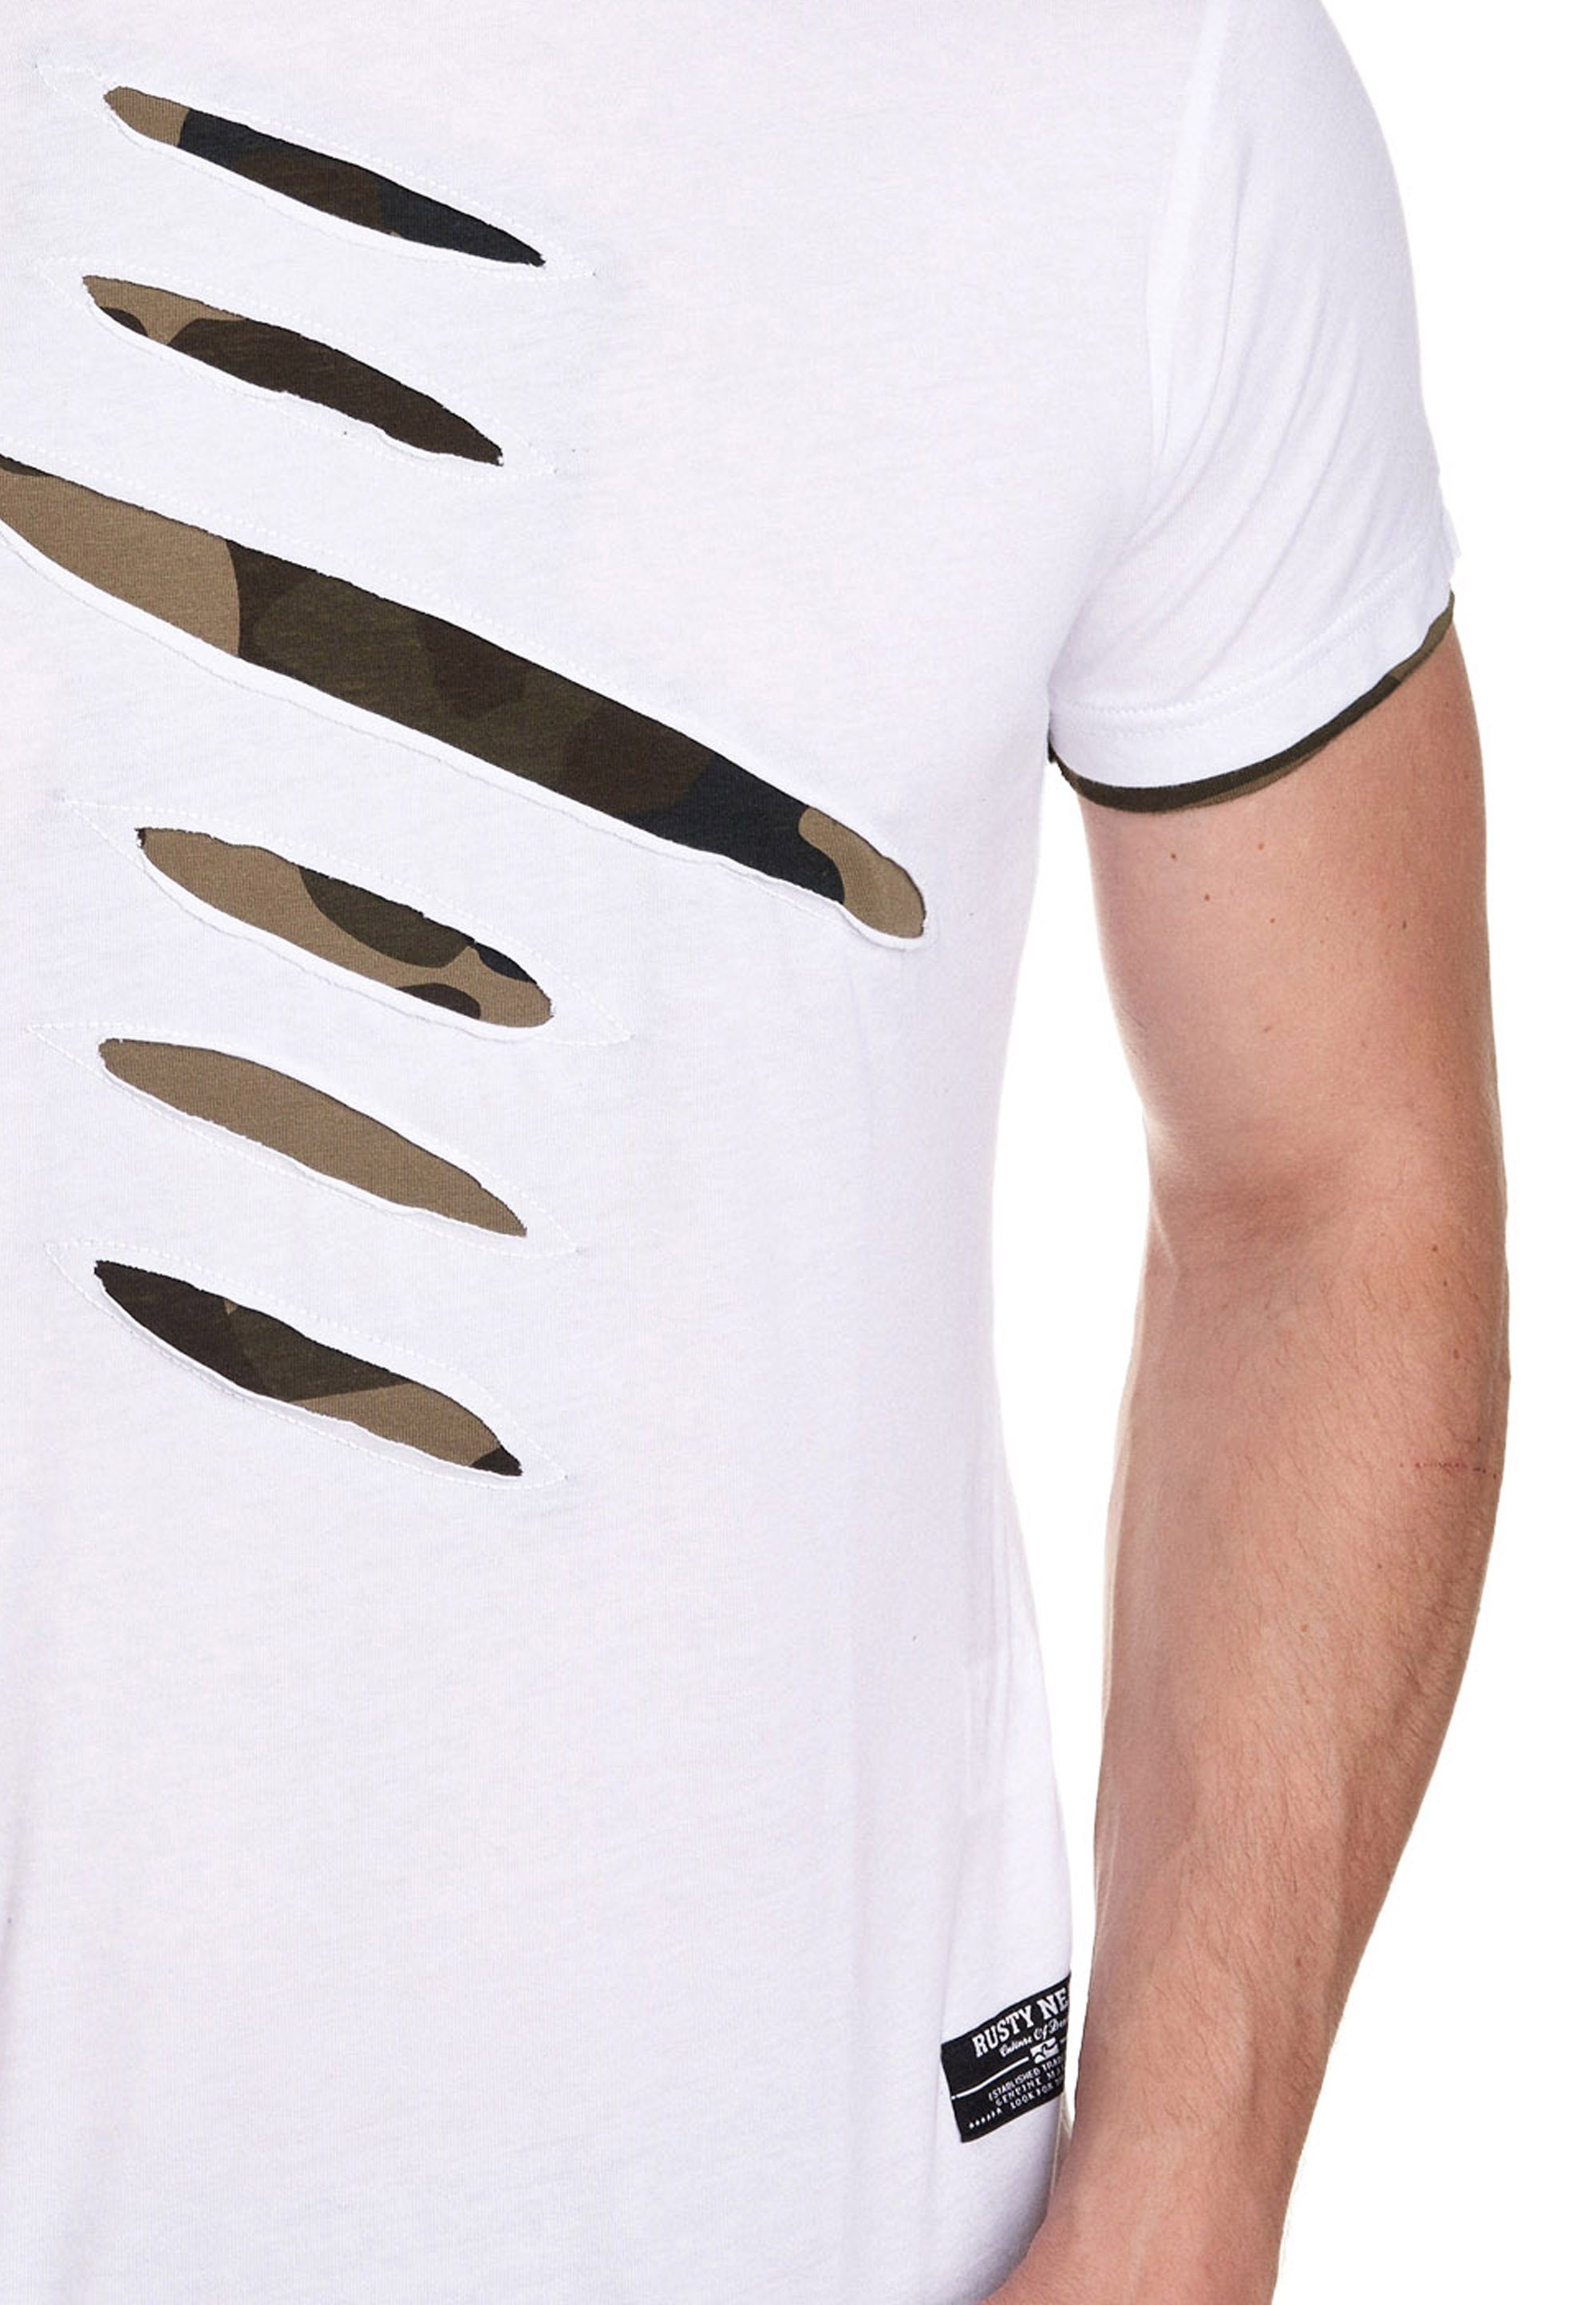 trendigen weiß Rusty 2-in-1-Design Neal im T-Shirt